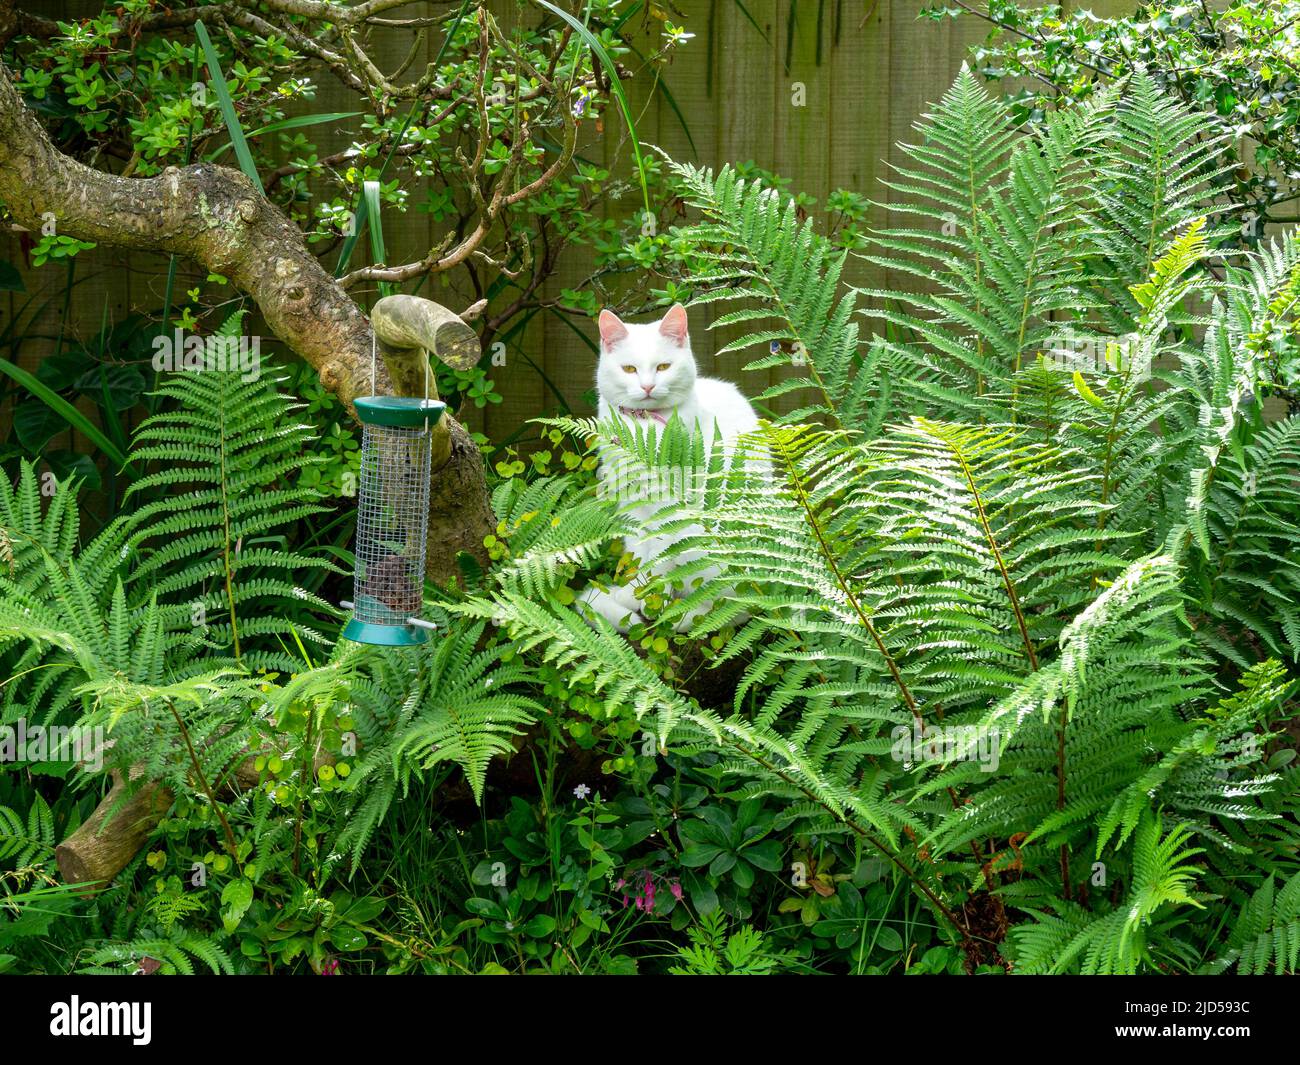 Weiße Katze unter Farnen, die einen Gartenvogelfutterhäuschen beobachten Stockfoto